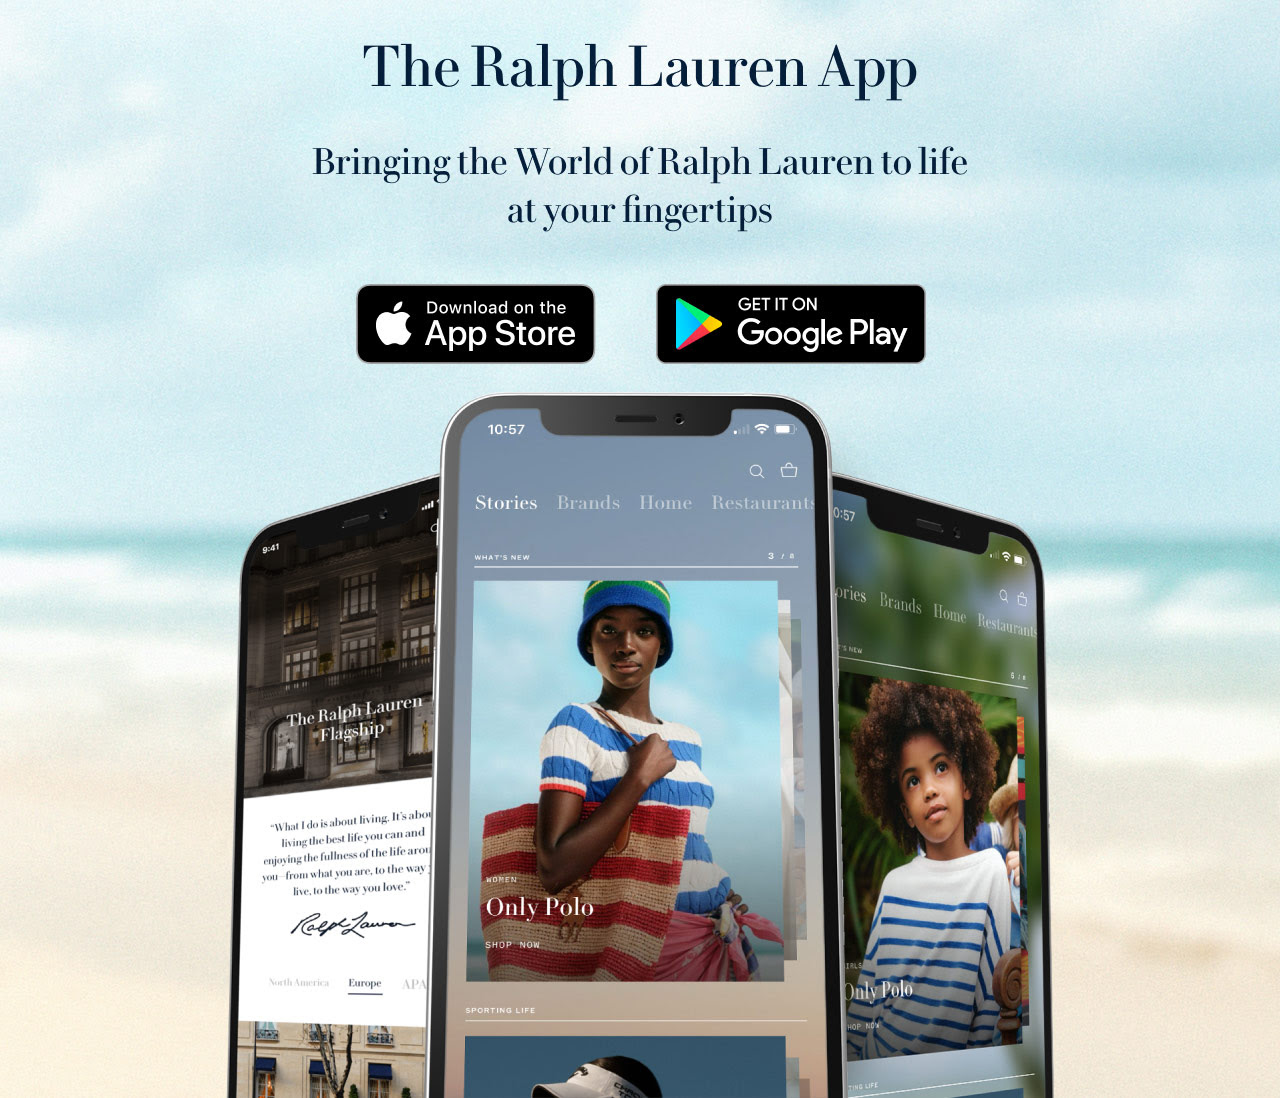 The Ralph Lauren App